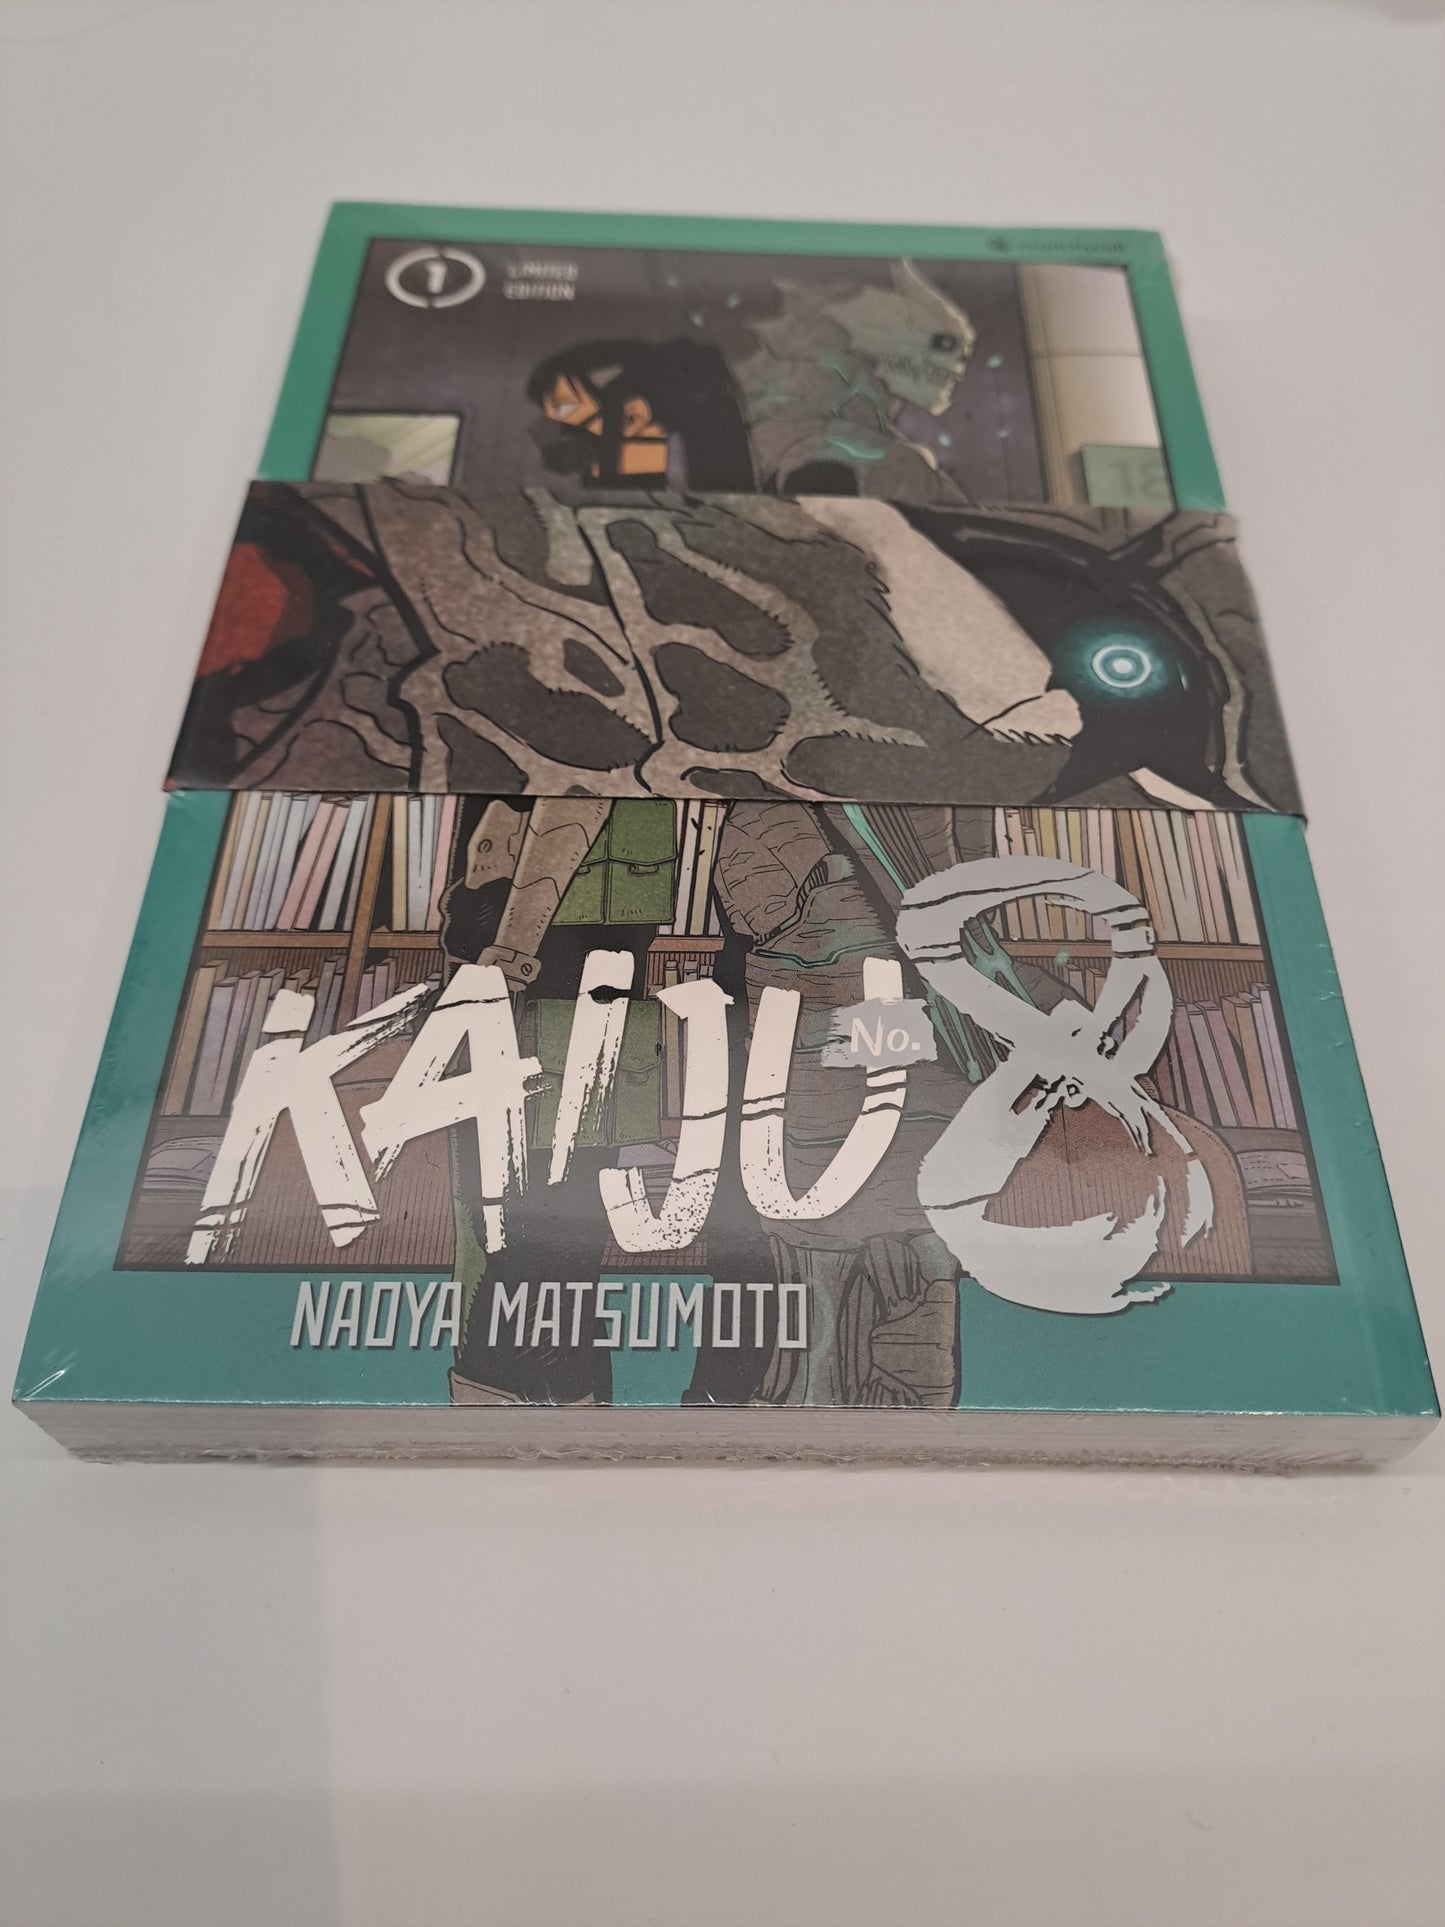 Nadya Matsumoto - Kaiju No. 8 Band 1 Limited Edition